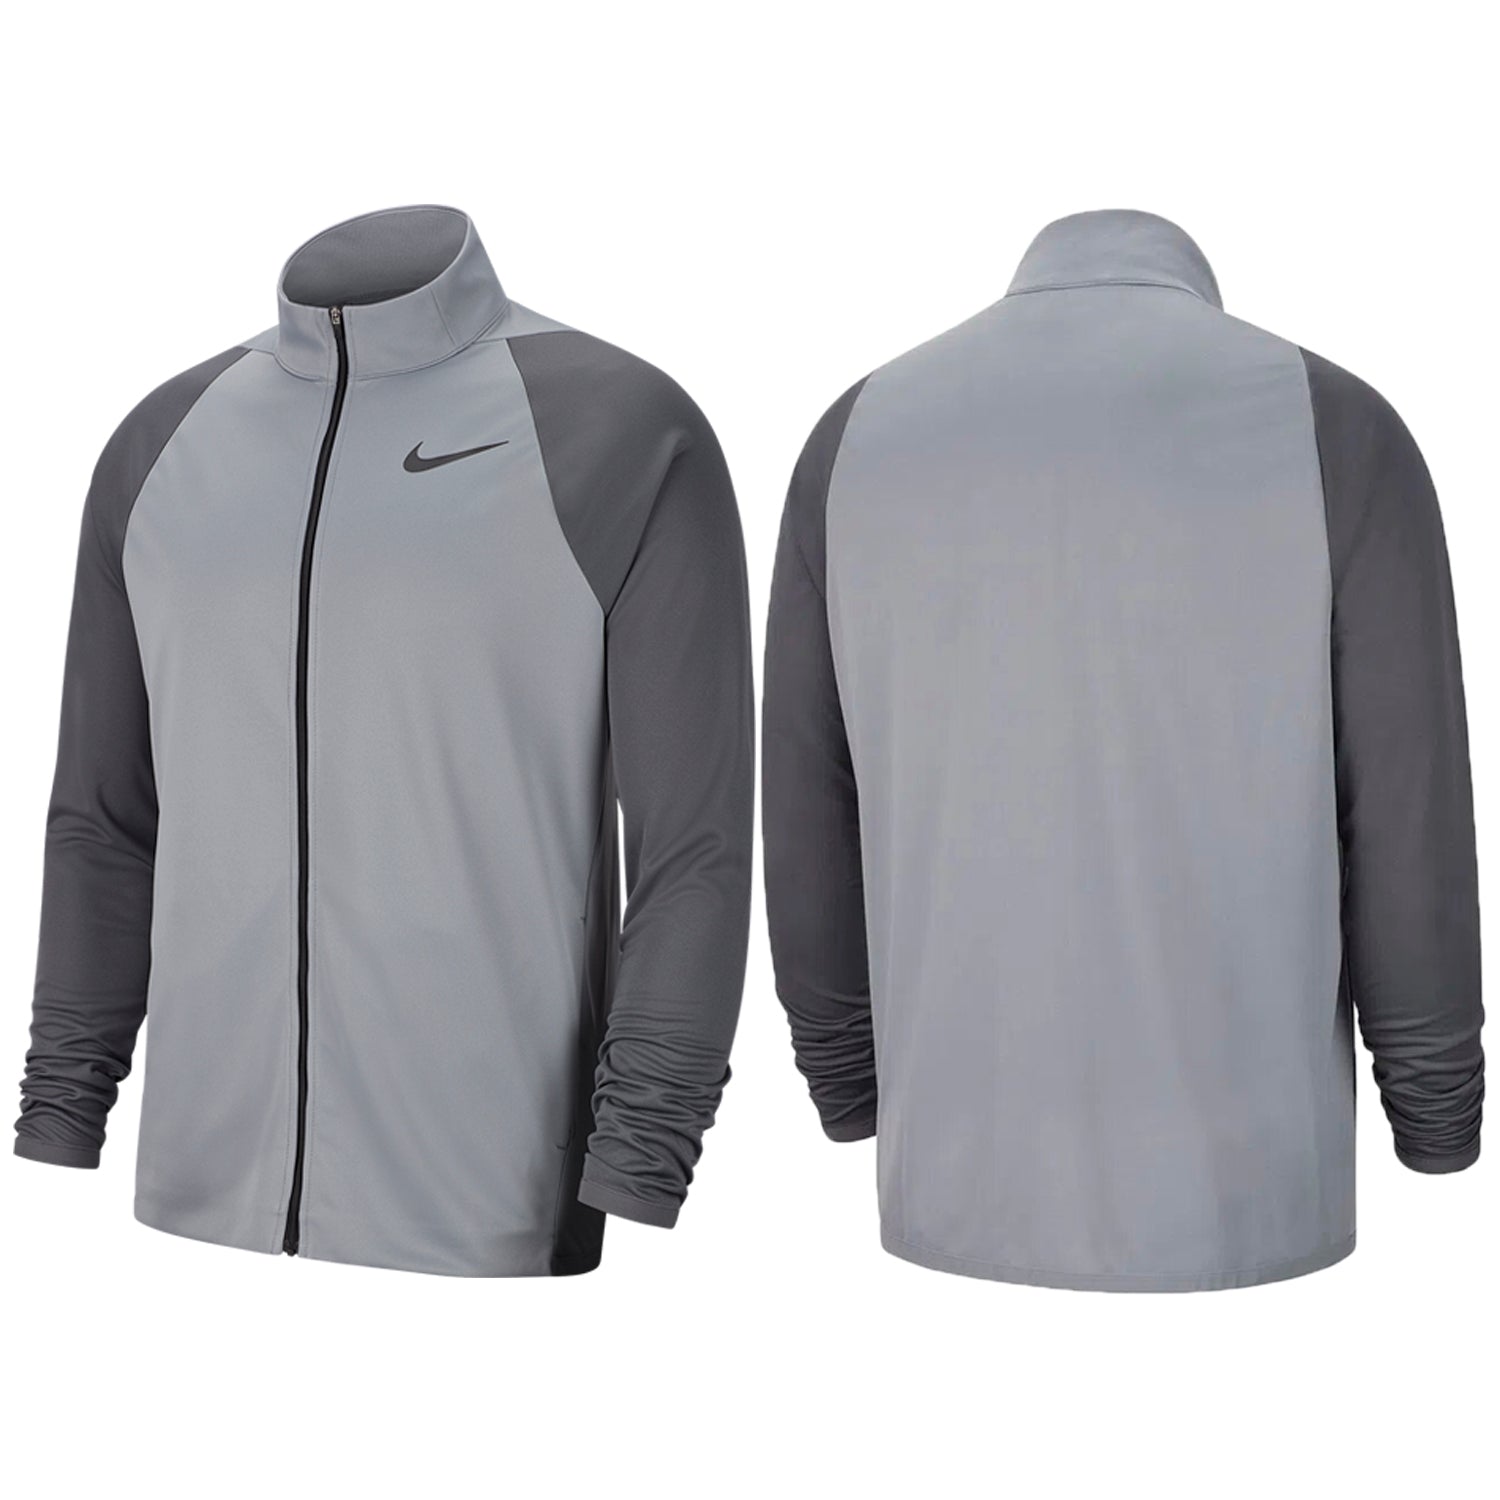 Nike Knit Training Full Zip Jacket Mens Style : 928026